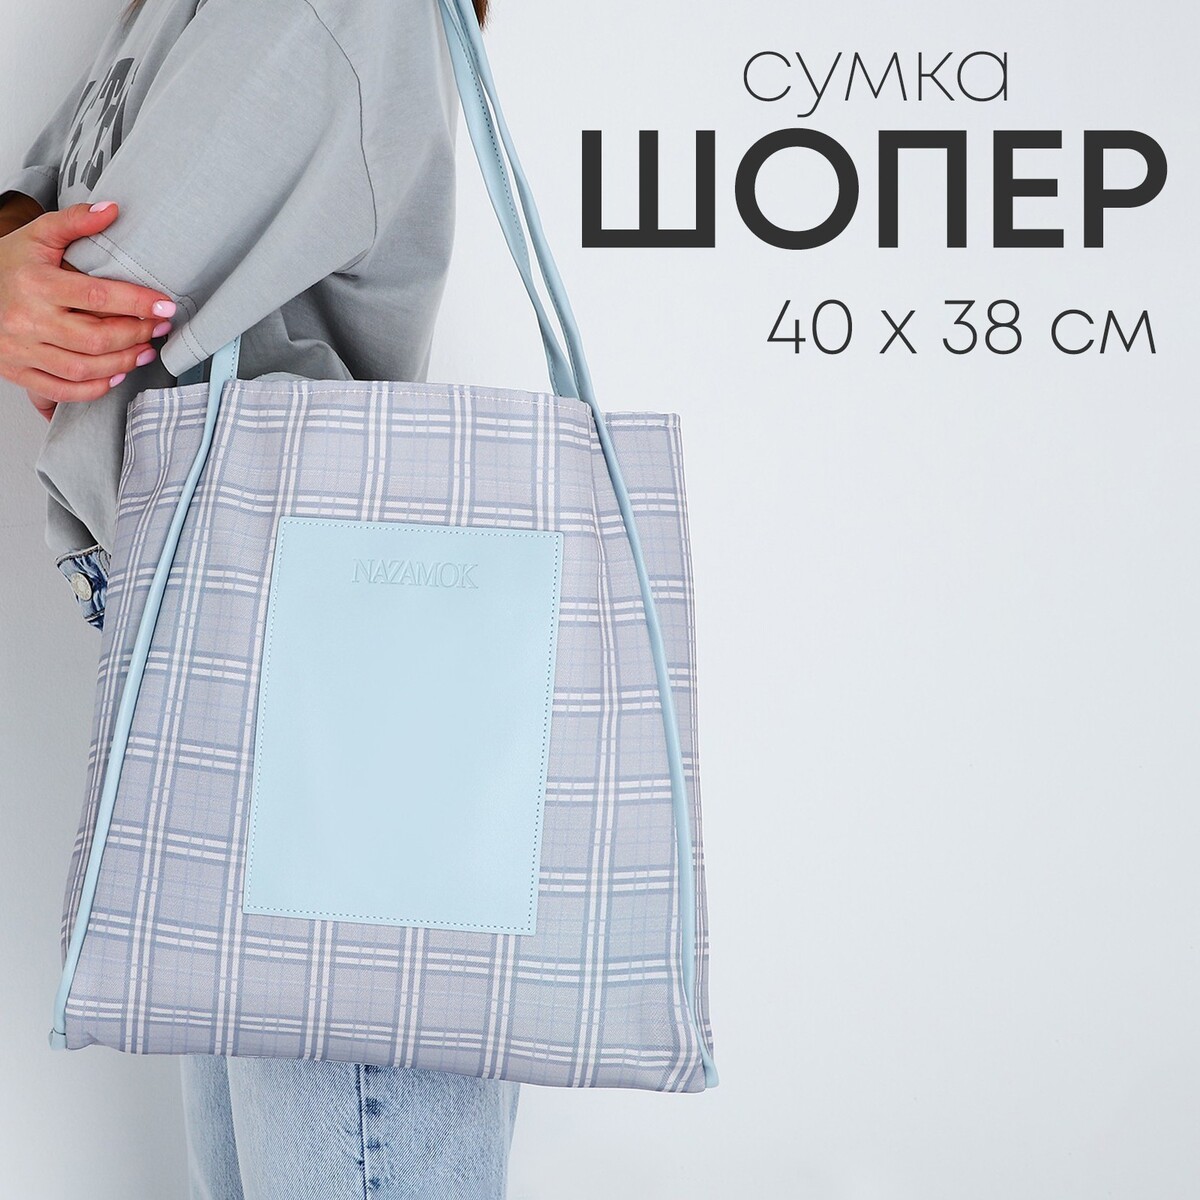 Сумка - шопер с нашивкой nazamok серый, 40×38×7 см сумка nazamok серый 40 х 35 см